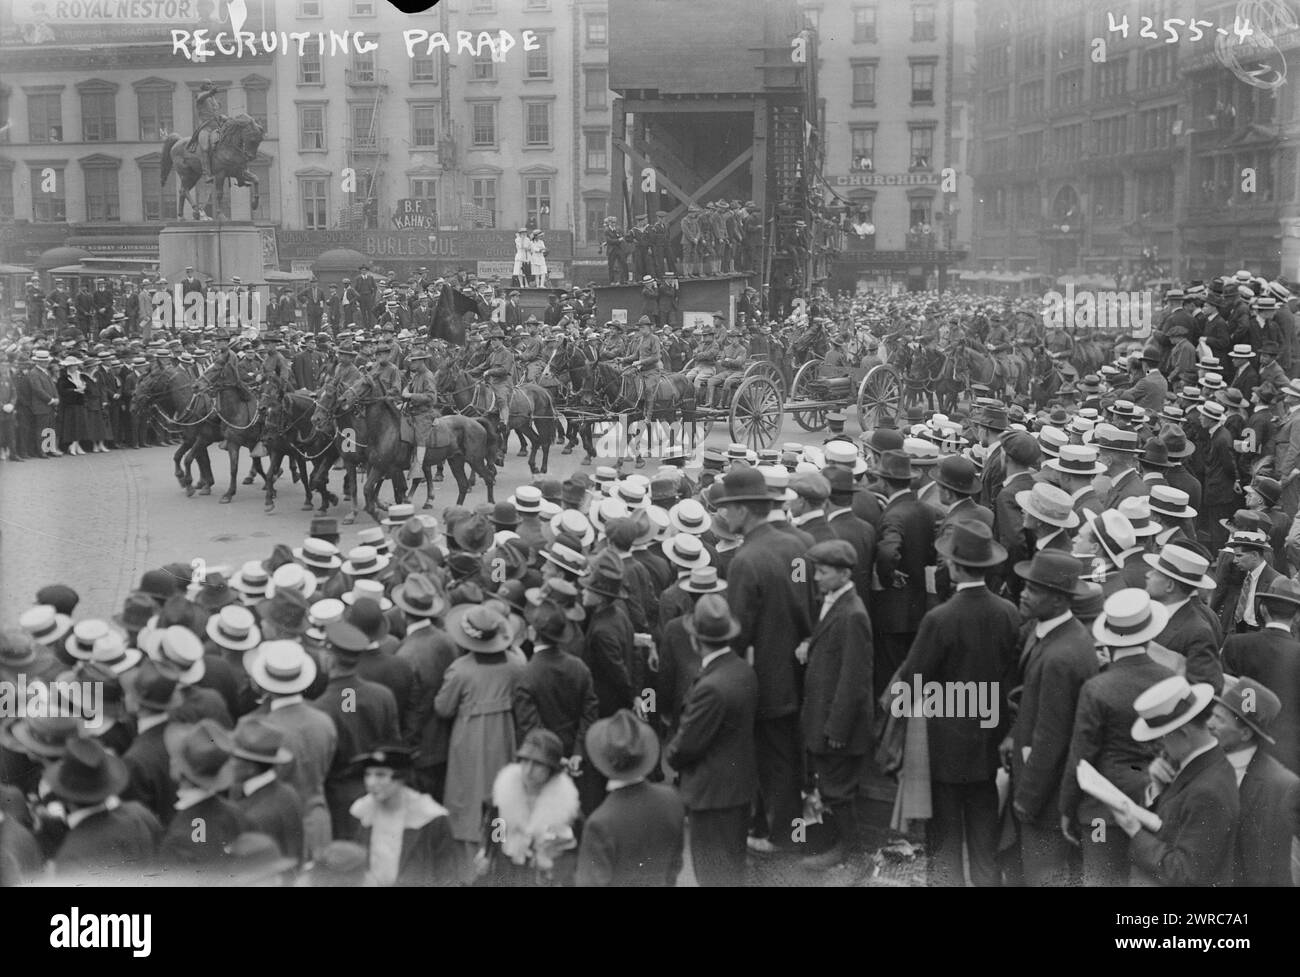 Recruiting Parade, la fotografia mostra una parata durante la prima guerra mondiale a Union Square, New York City., 1917, Guerra Mondiale, 1914-1918, lati negativi del vetro, 1 negativo: vetro Foto Stock